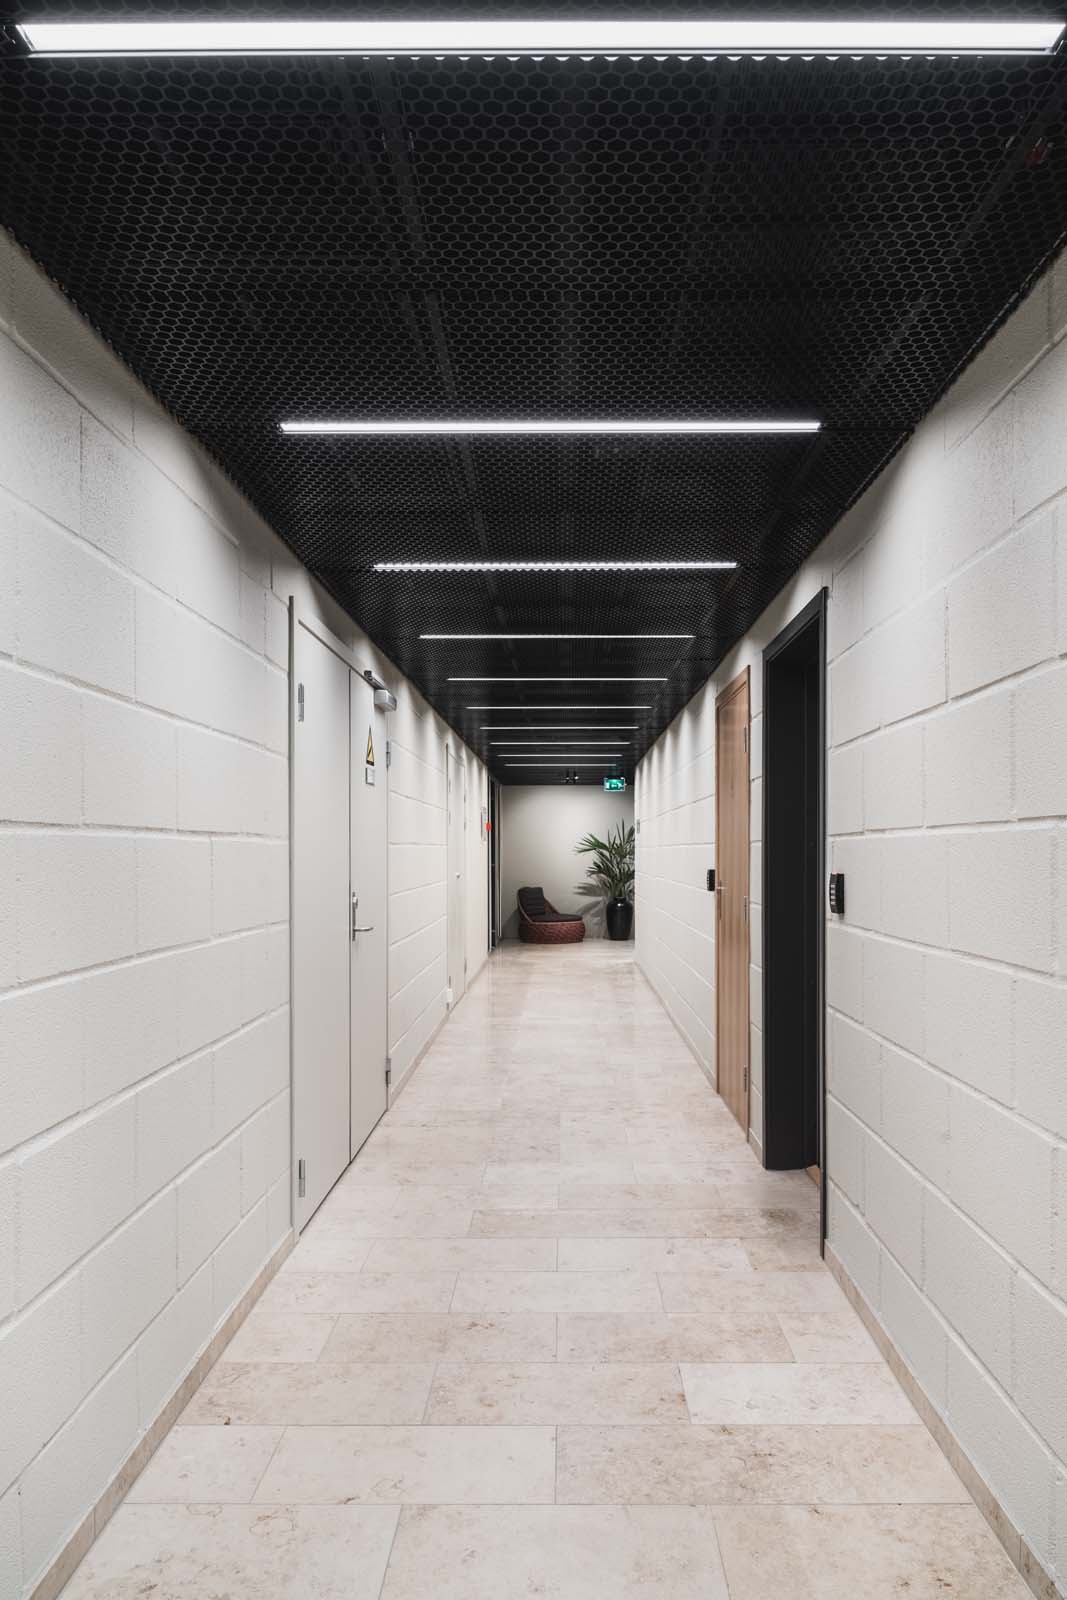 Retningsførende belysning i korridorer.